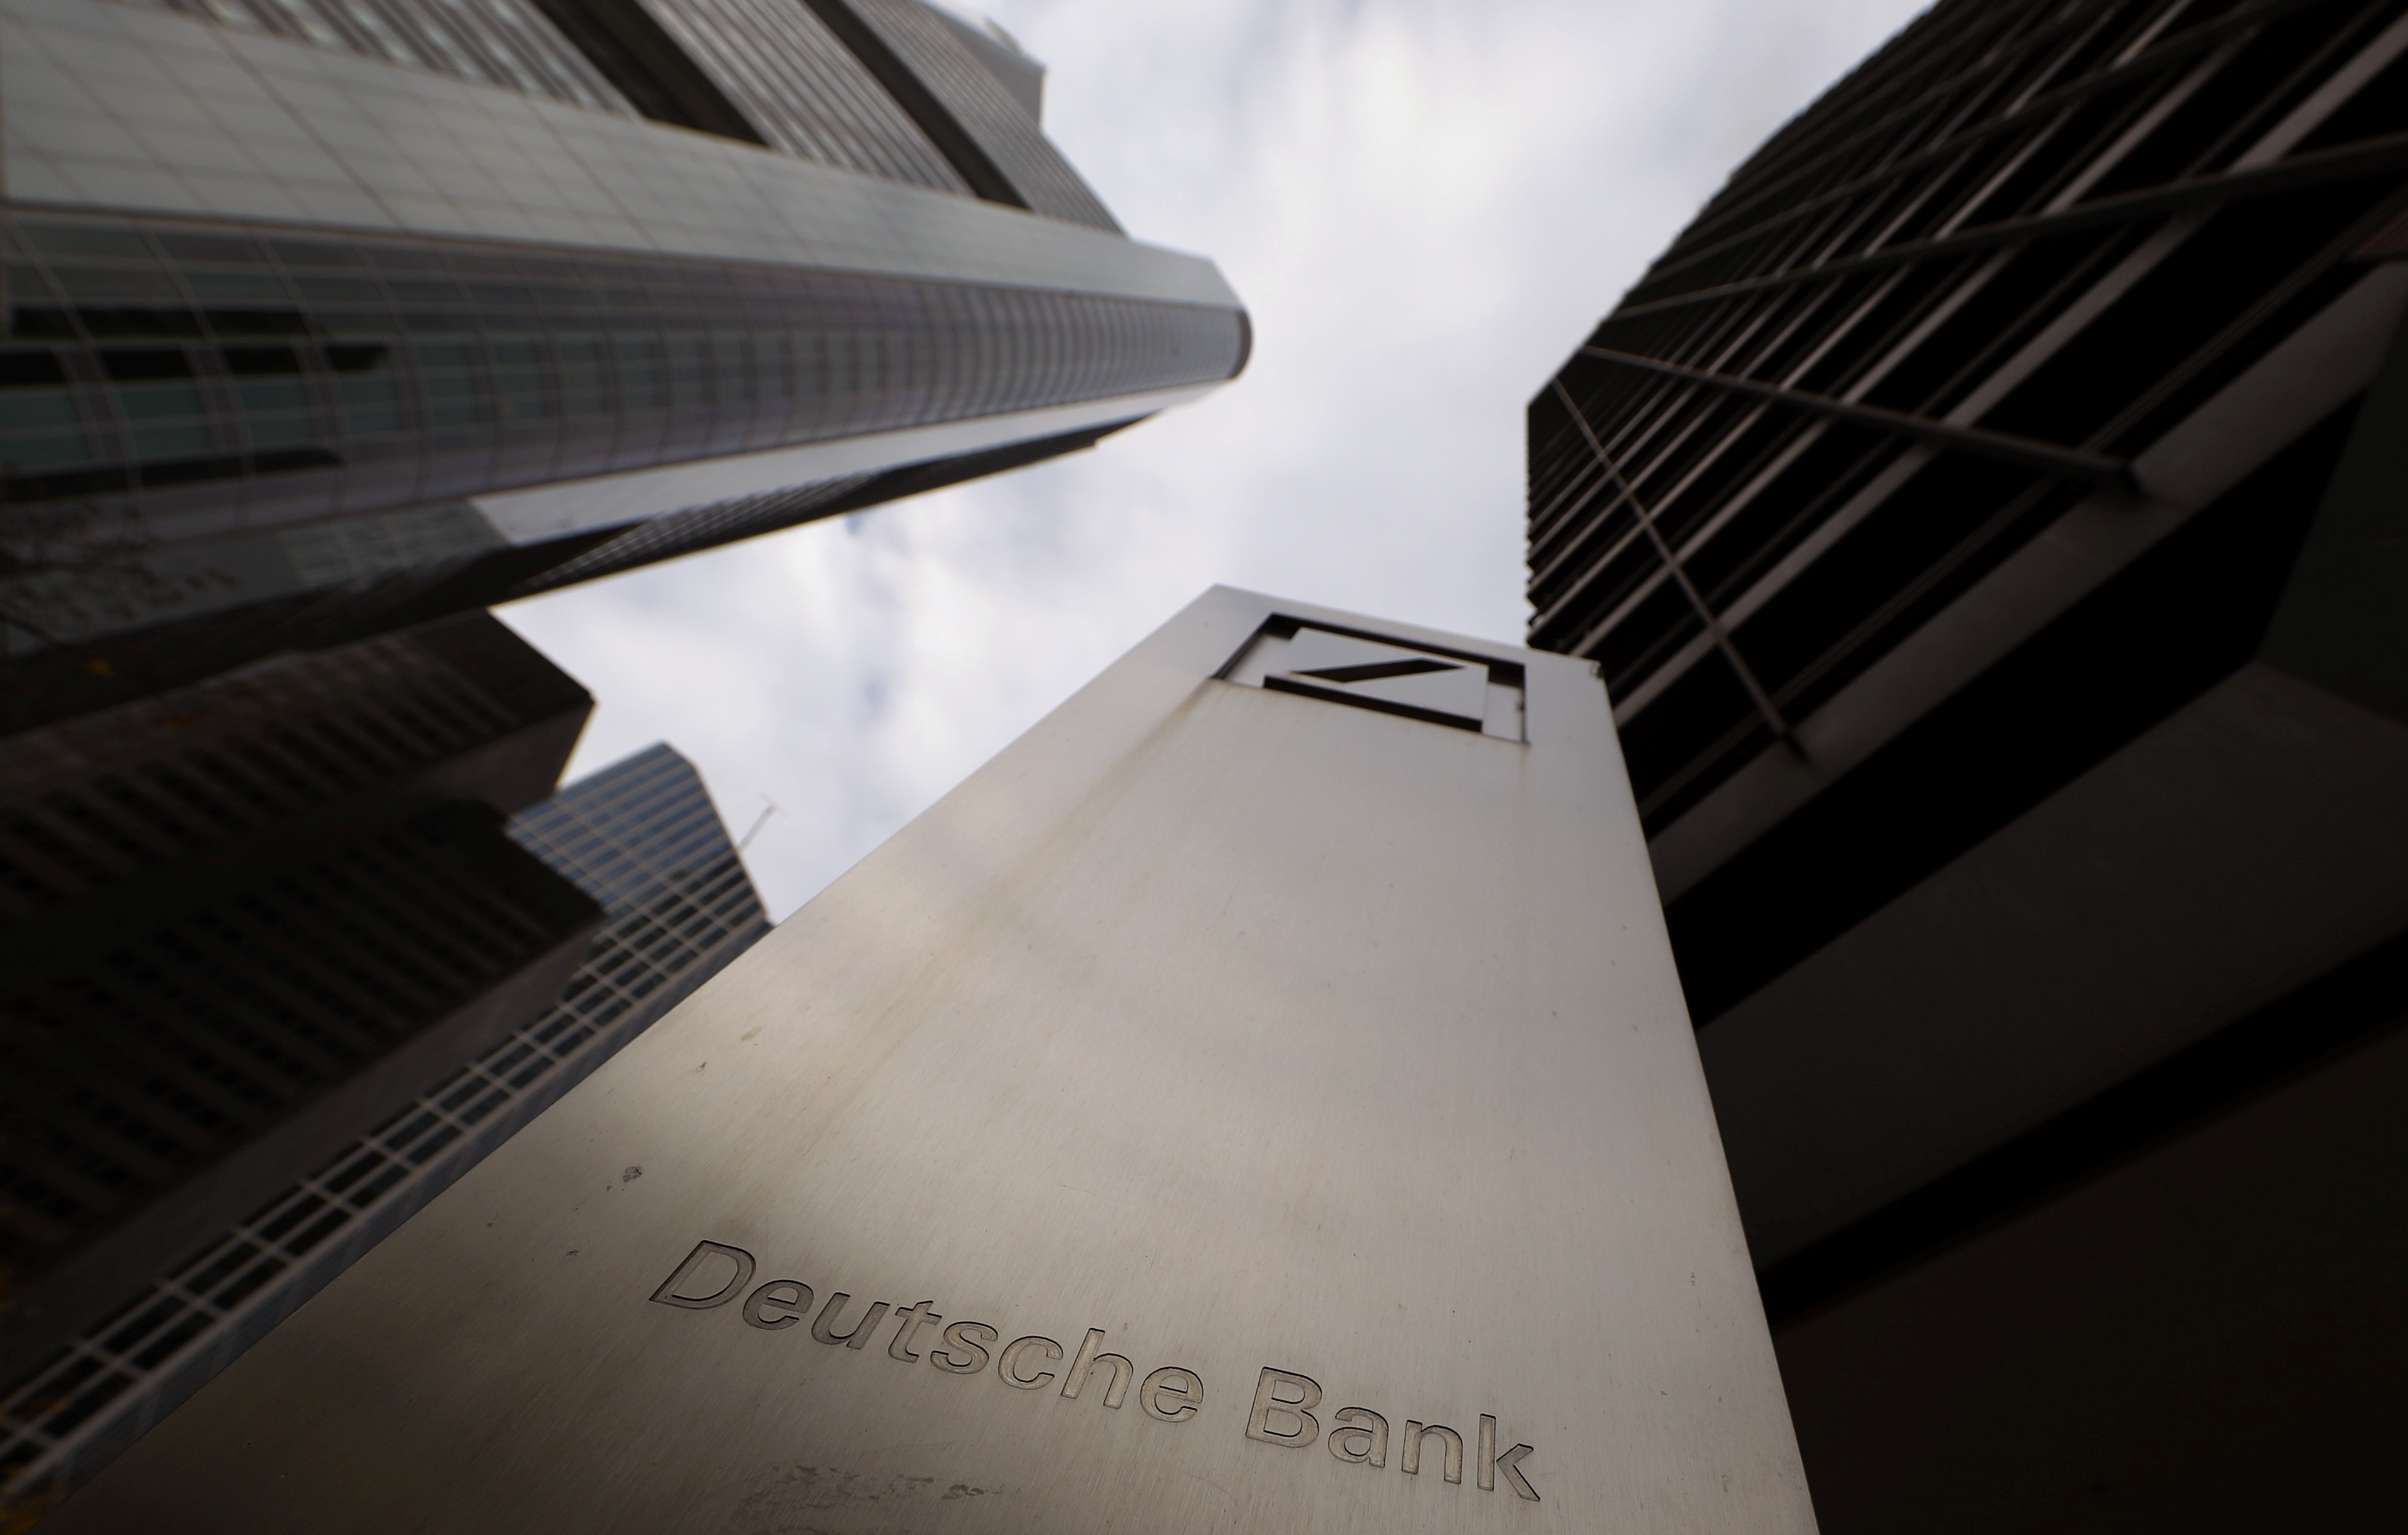 The logo of Deutsche Bank is seen in front of one of the bank's office buildings in Frankfurt